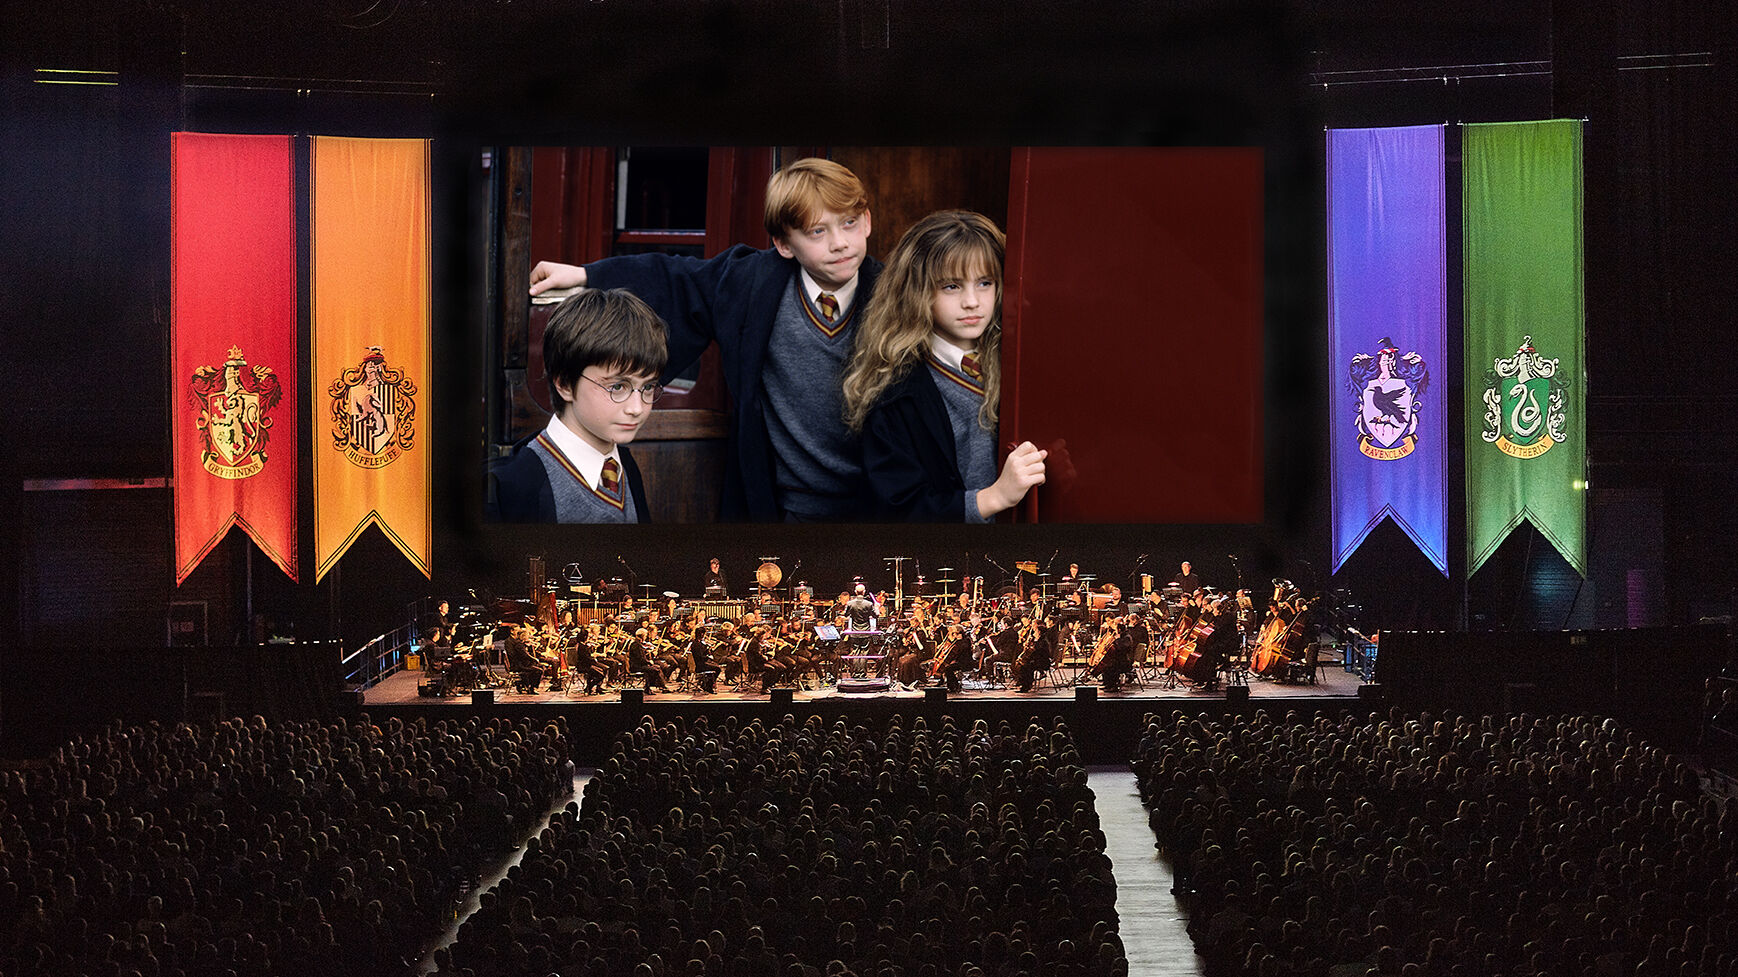 Ein Orchester spielt die Filmmusik zu "Harry Potter und der Stein der Weisen", während der Film auf einer großen Leinwand gezeigt wird.